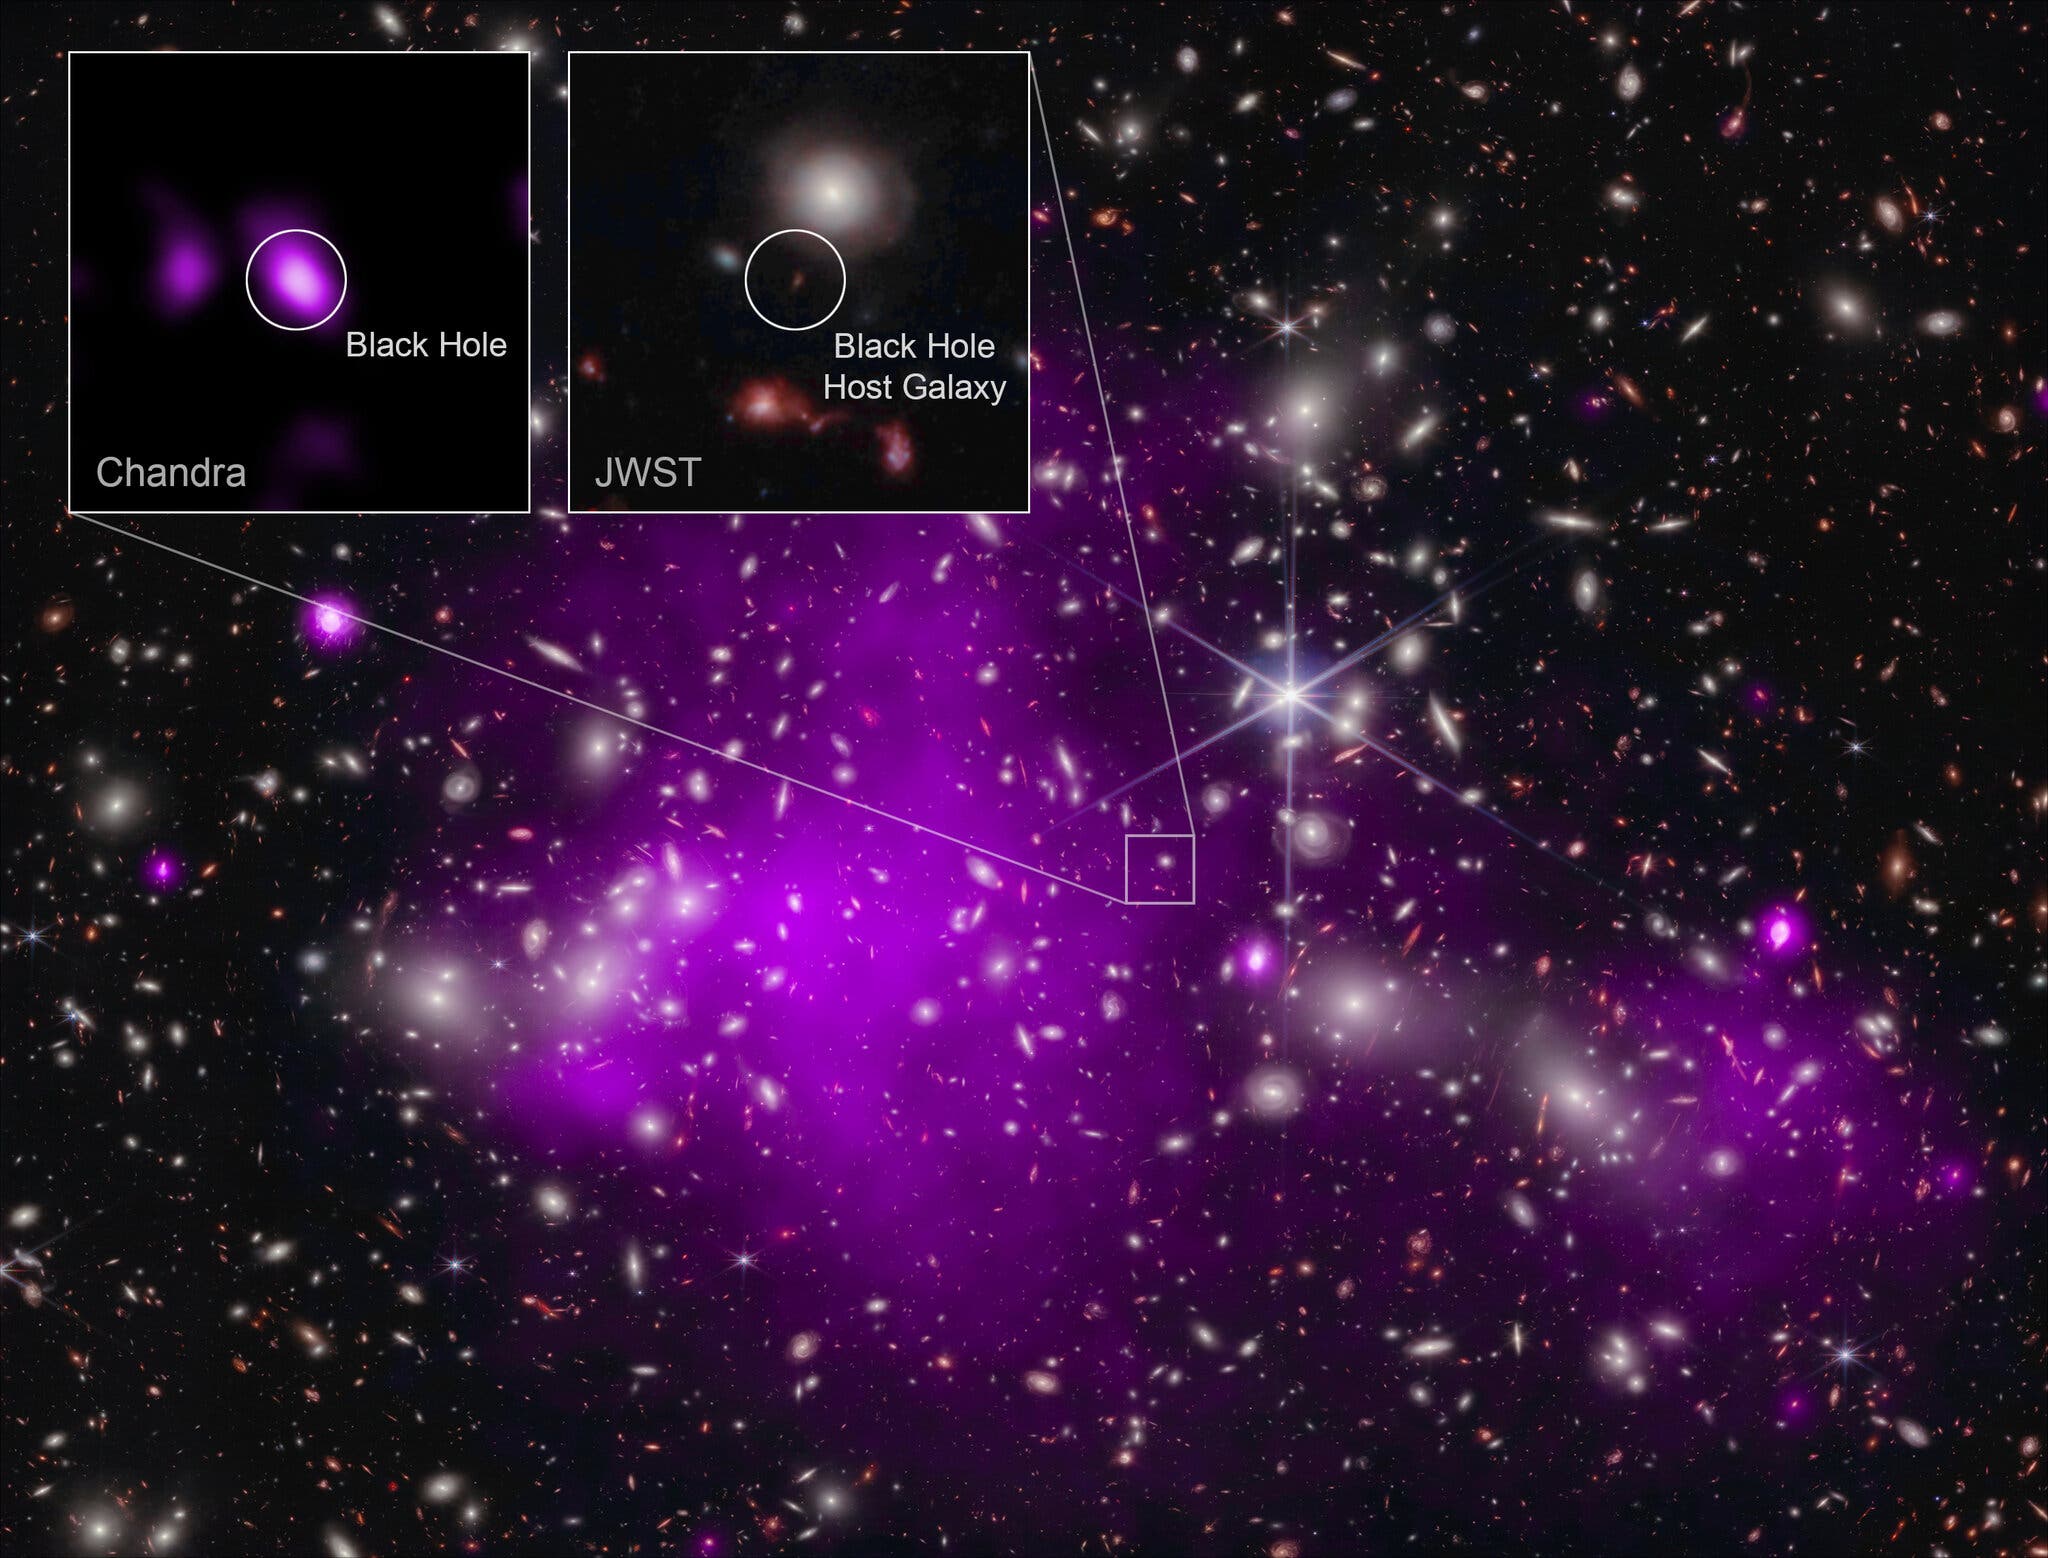 На составном изображении показано поле звёзд и галактик, разбросанных по космосу, с большими фиолетовыми облаками в центре слева и меньшим фиолетовым облаком справа. На двух вставных детальных изображениях небольшой части снимка выделяется фиолетовая точка, идентифицированная как чёрная дыра, и небольшая красноватая точка, идентифицированная как галактика-хозяин чёрной дыры.